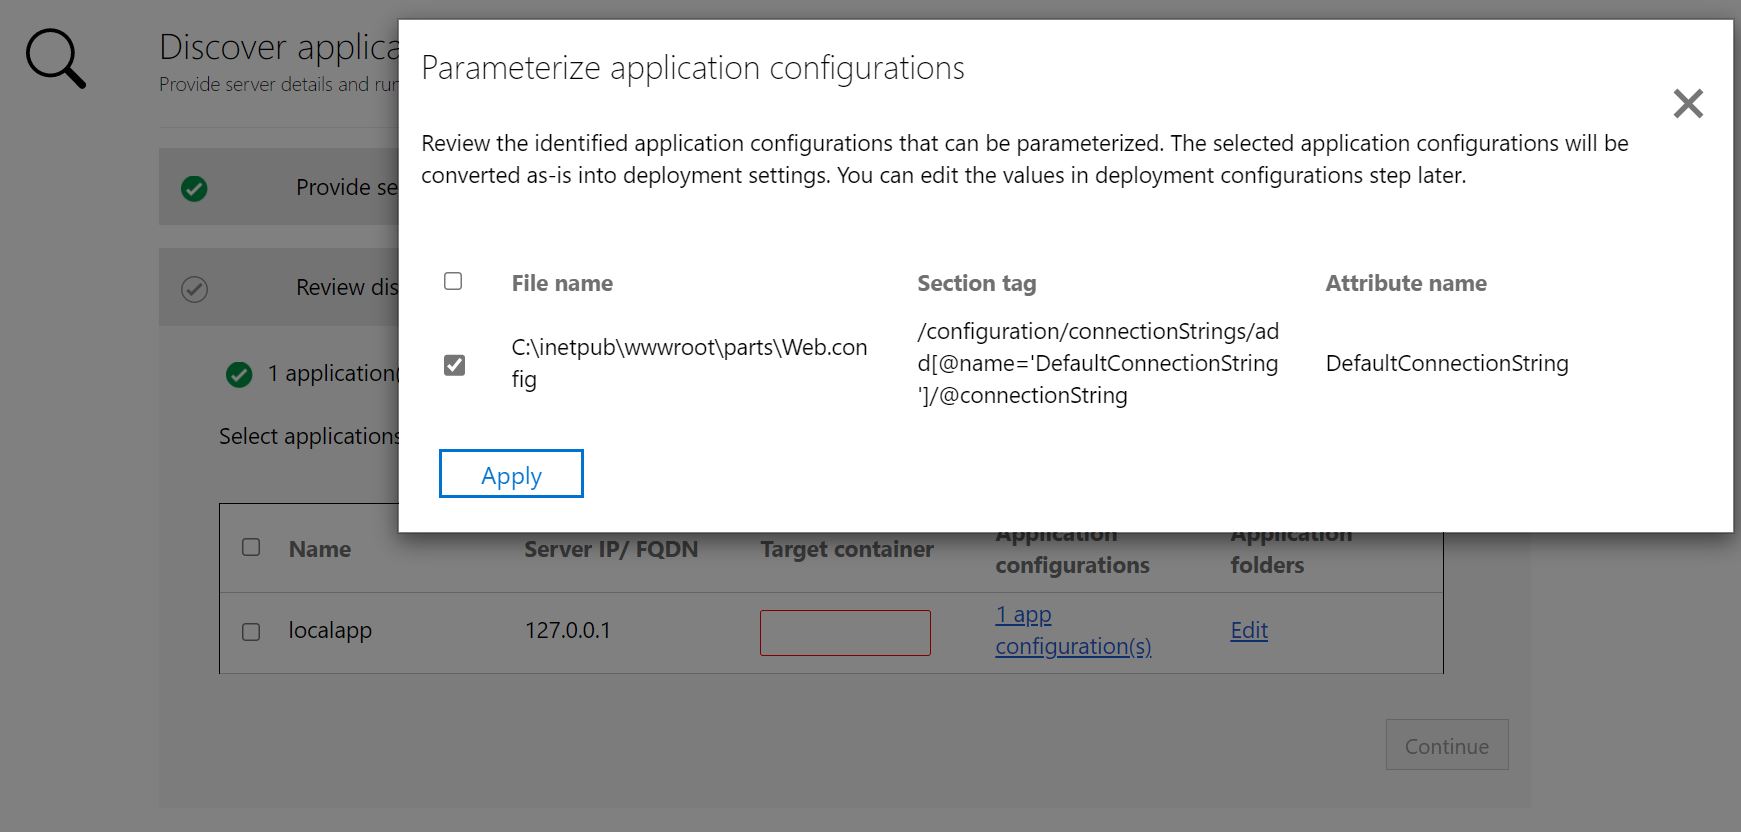 Capture d’écran de l’application ASP.NET de paramétrage de la configuration de l’application.